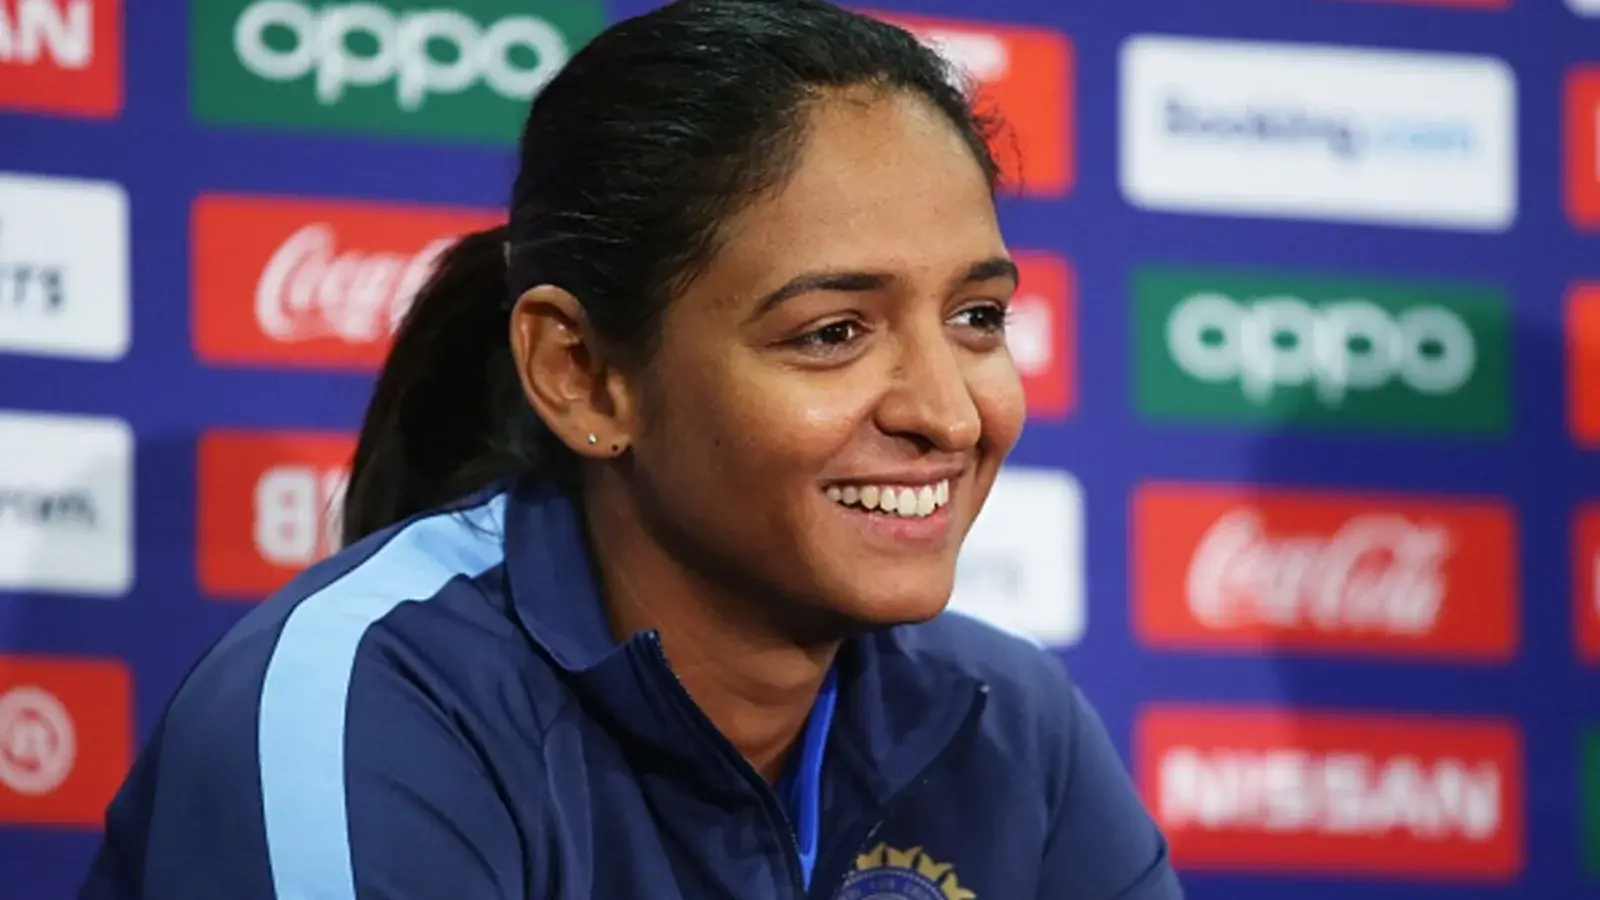  हरमनप्रीत कौर ऐतिहासिक राष्ट्रमंडल खेल 2022 में भारत की महिलाओं का नेतृत्व करेंगी |  क्रिकेट
